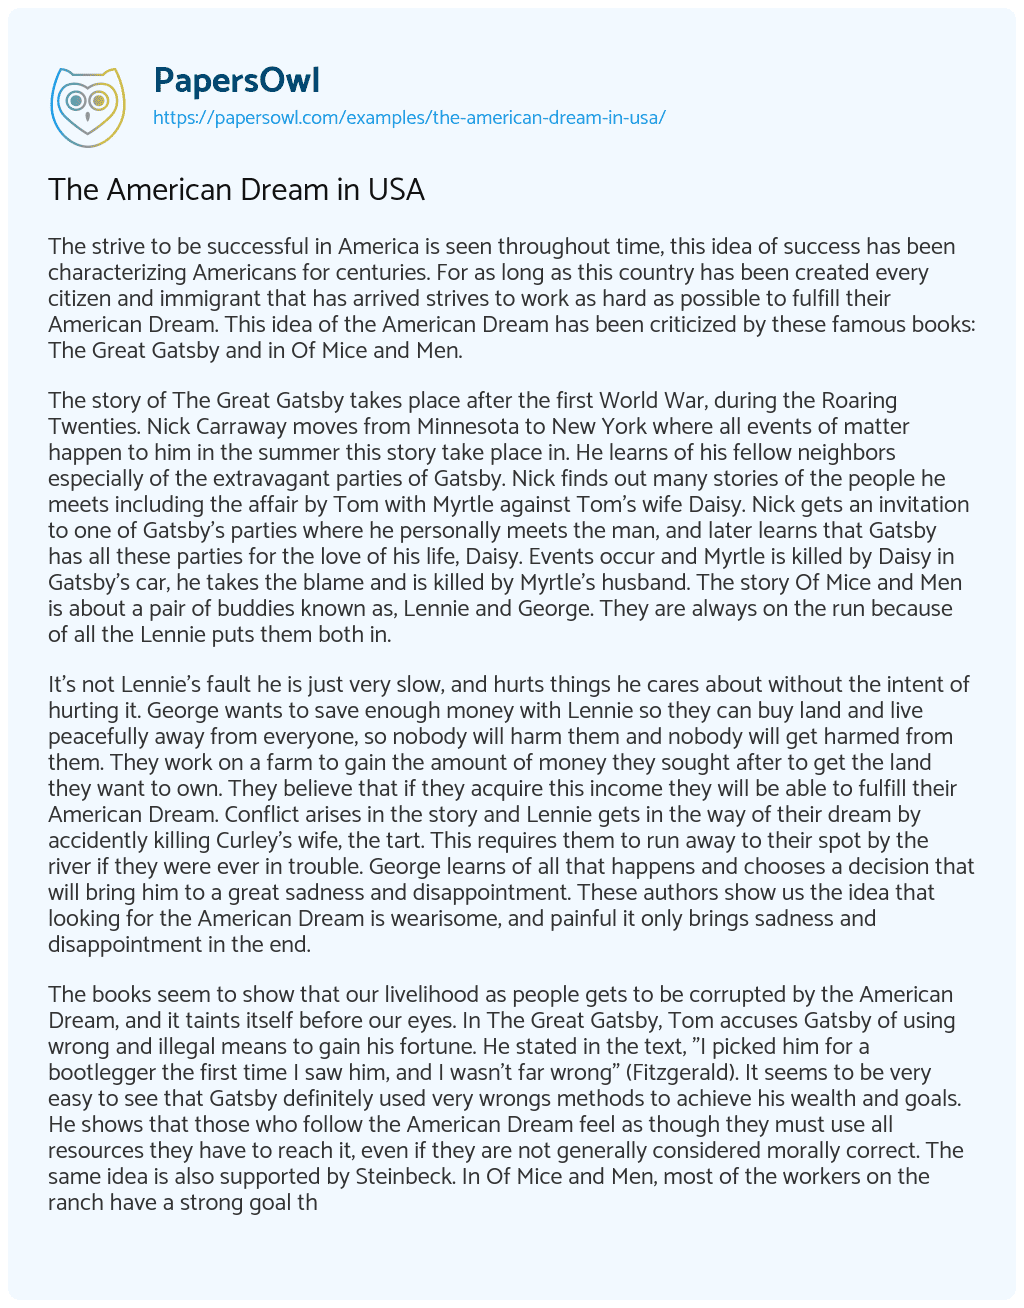 The American Dream in USA essay